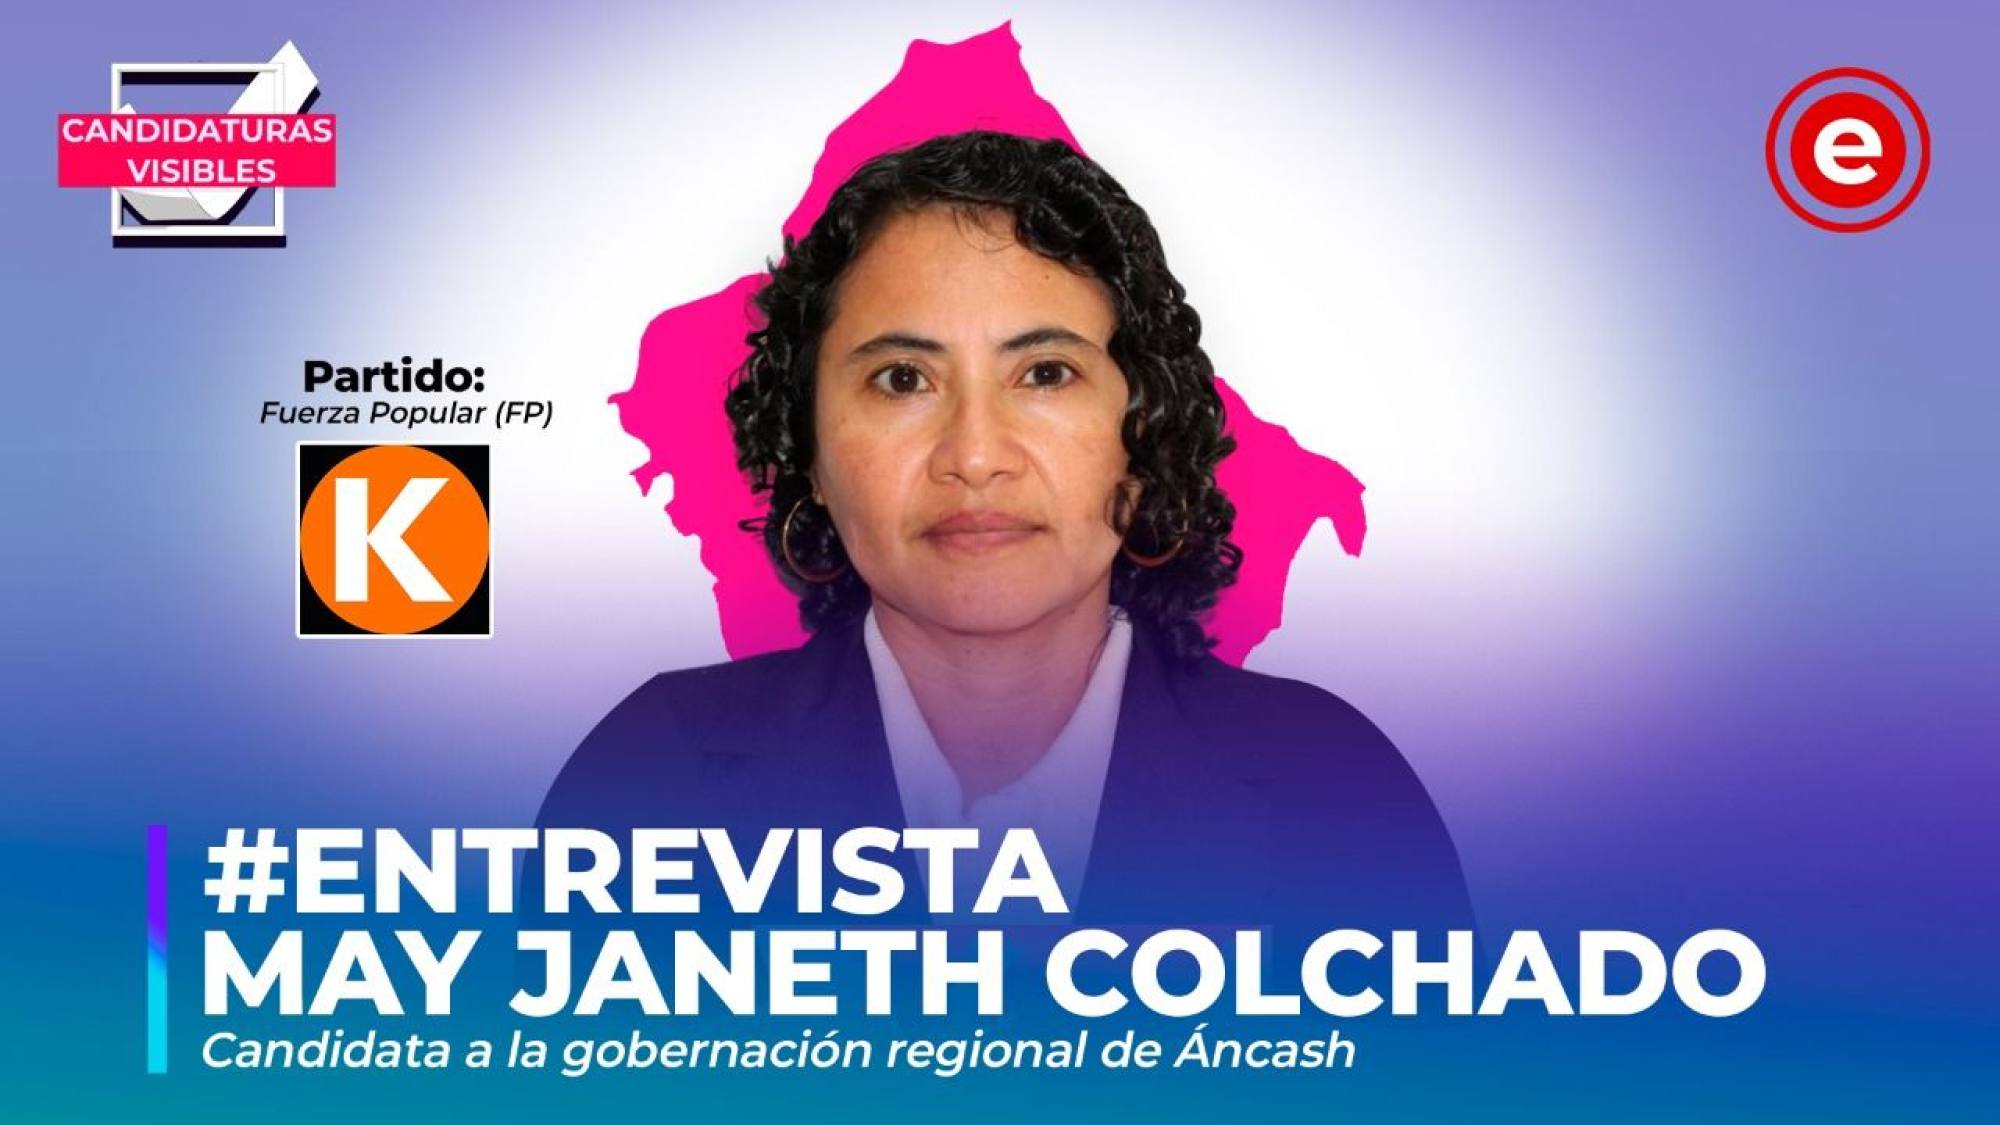 Candidaturas Visibles | May Janeth Colchado candidata a la gobernación regional de Áncash por FP, Epicentro TV